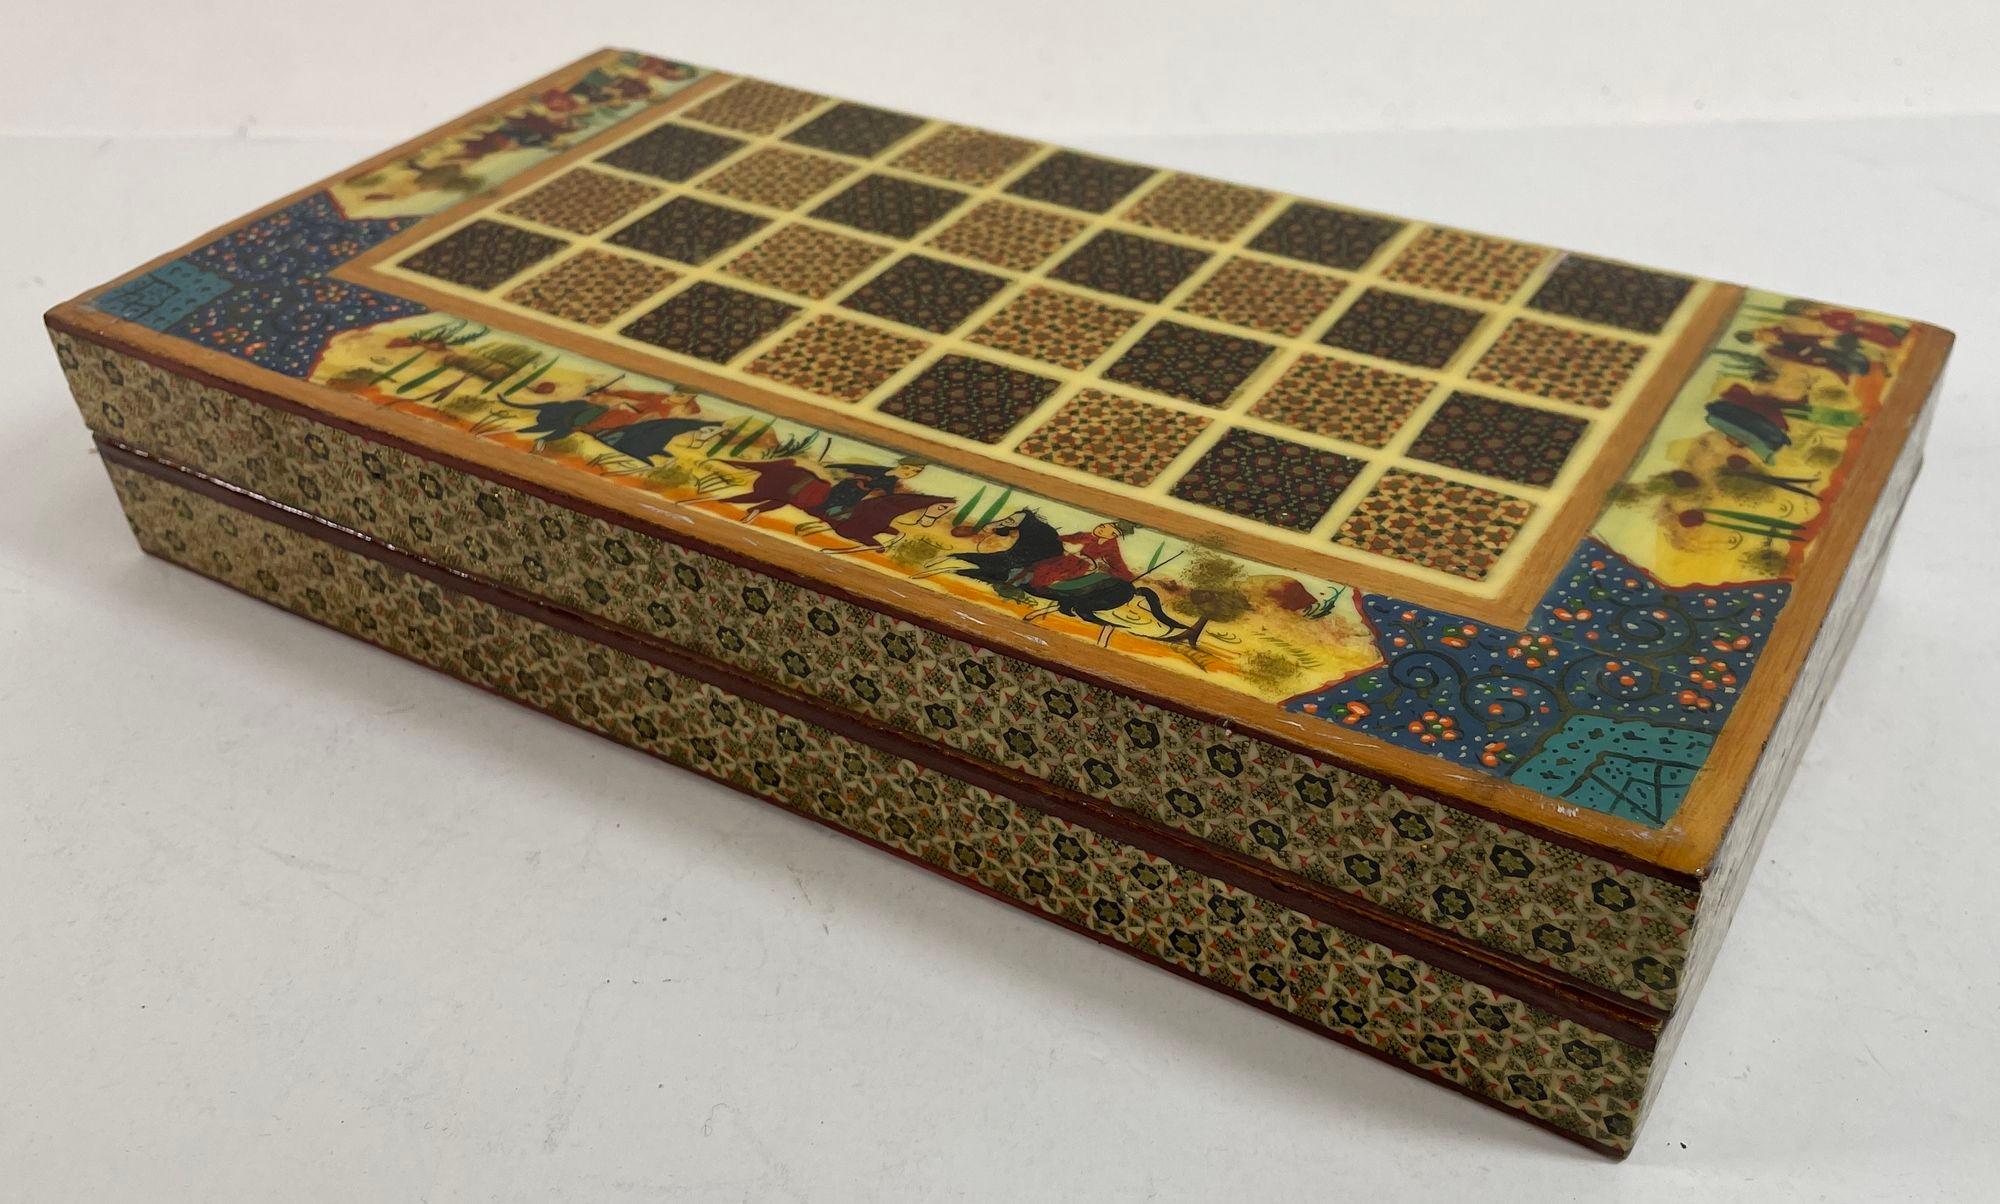 Vintage Persian Micro Mosaic Chess Game Box.
Aufwendig eingelegtes handgefertigtes Schachspiel im persischen Stil.
Handgefertigtes, wunderschönes Khatam-Schachbrett im maurischen Stil des Nahen Ostens, bedeckt mit sehr feinen